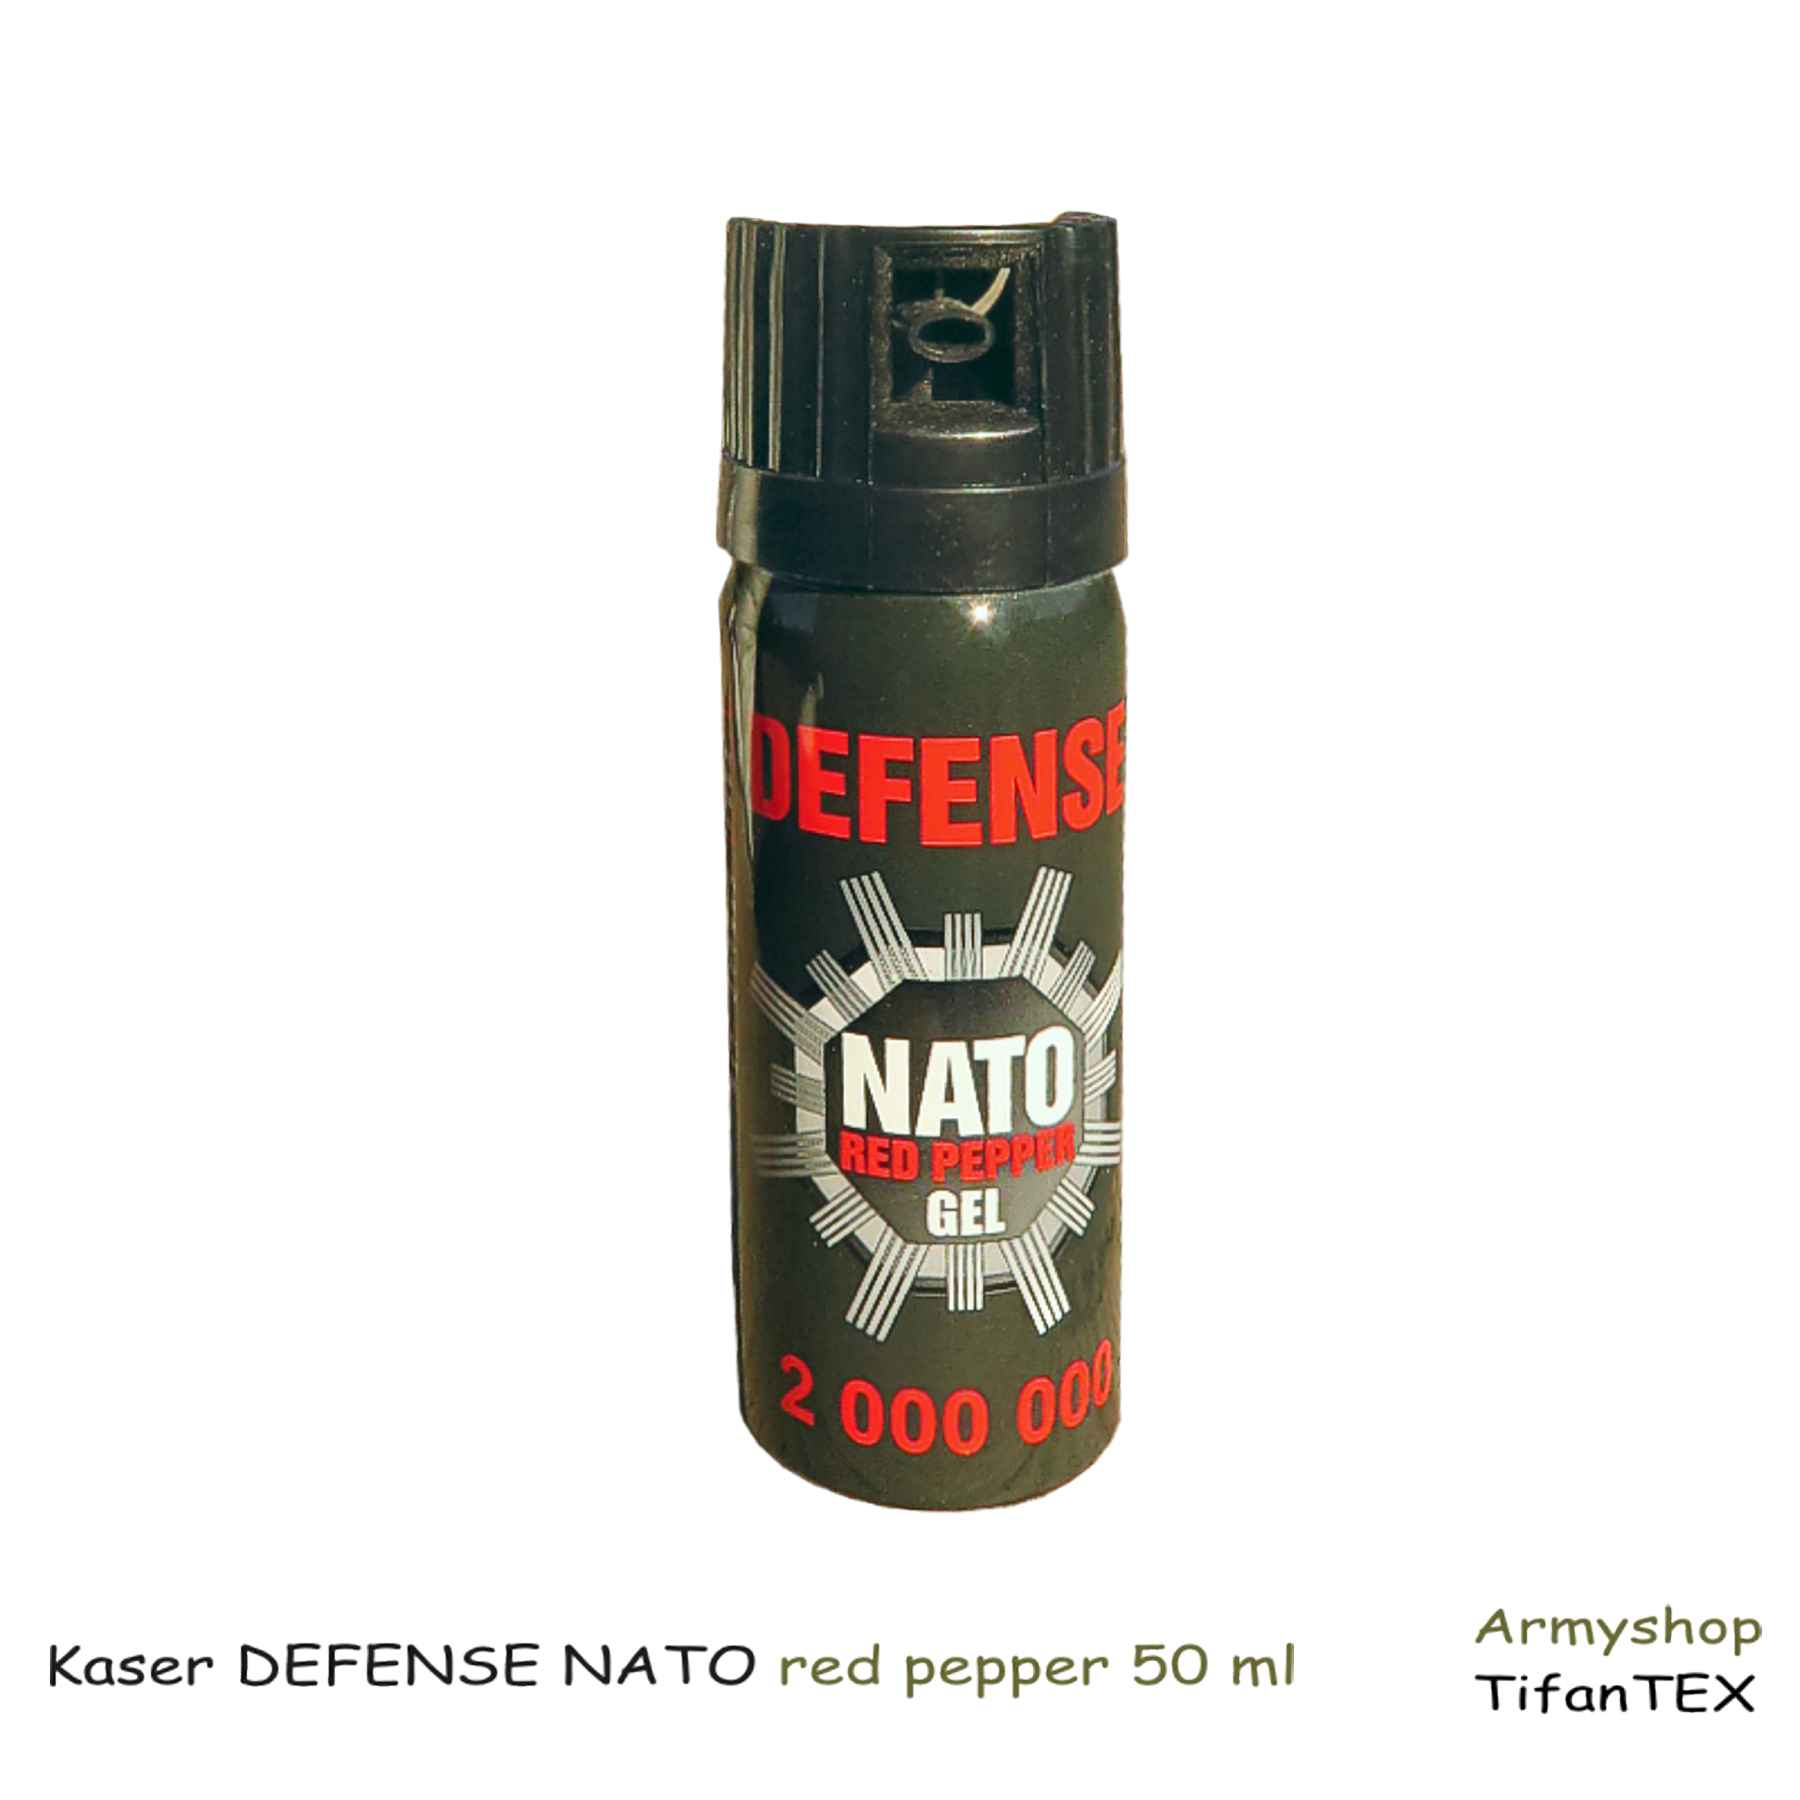 Kaser DEFENSE NATO red pepper 50 ml